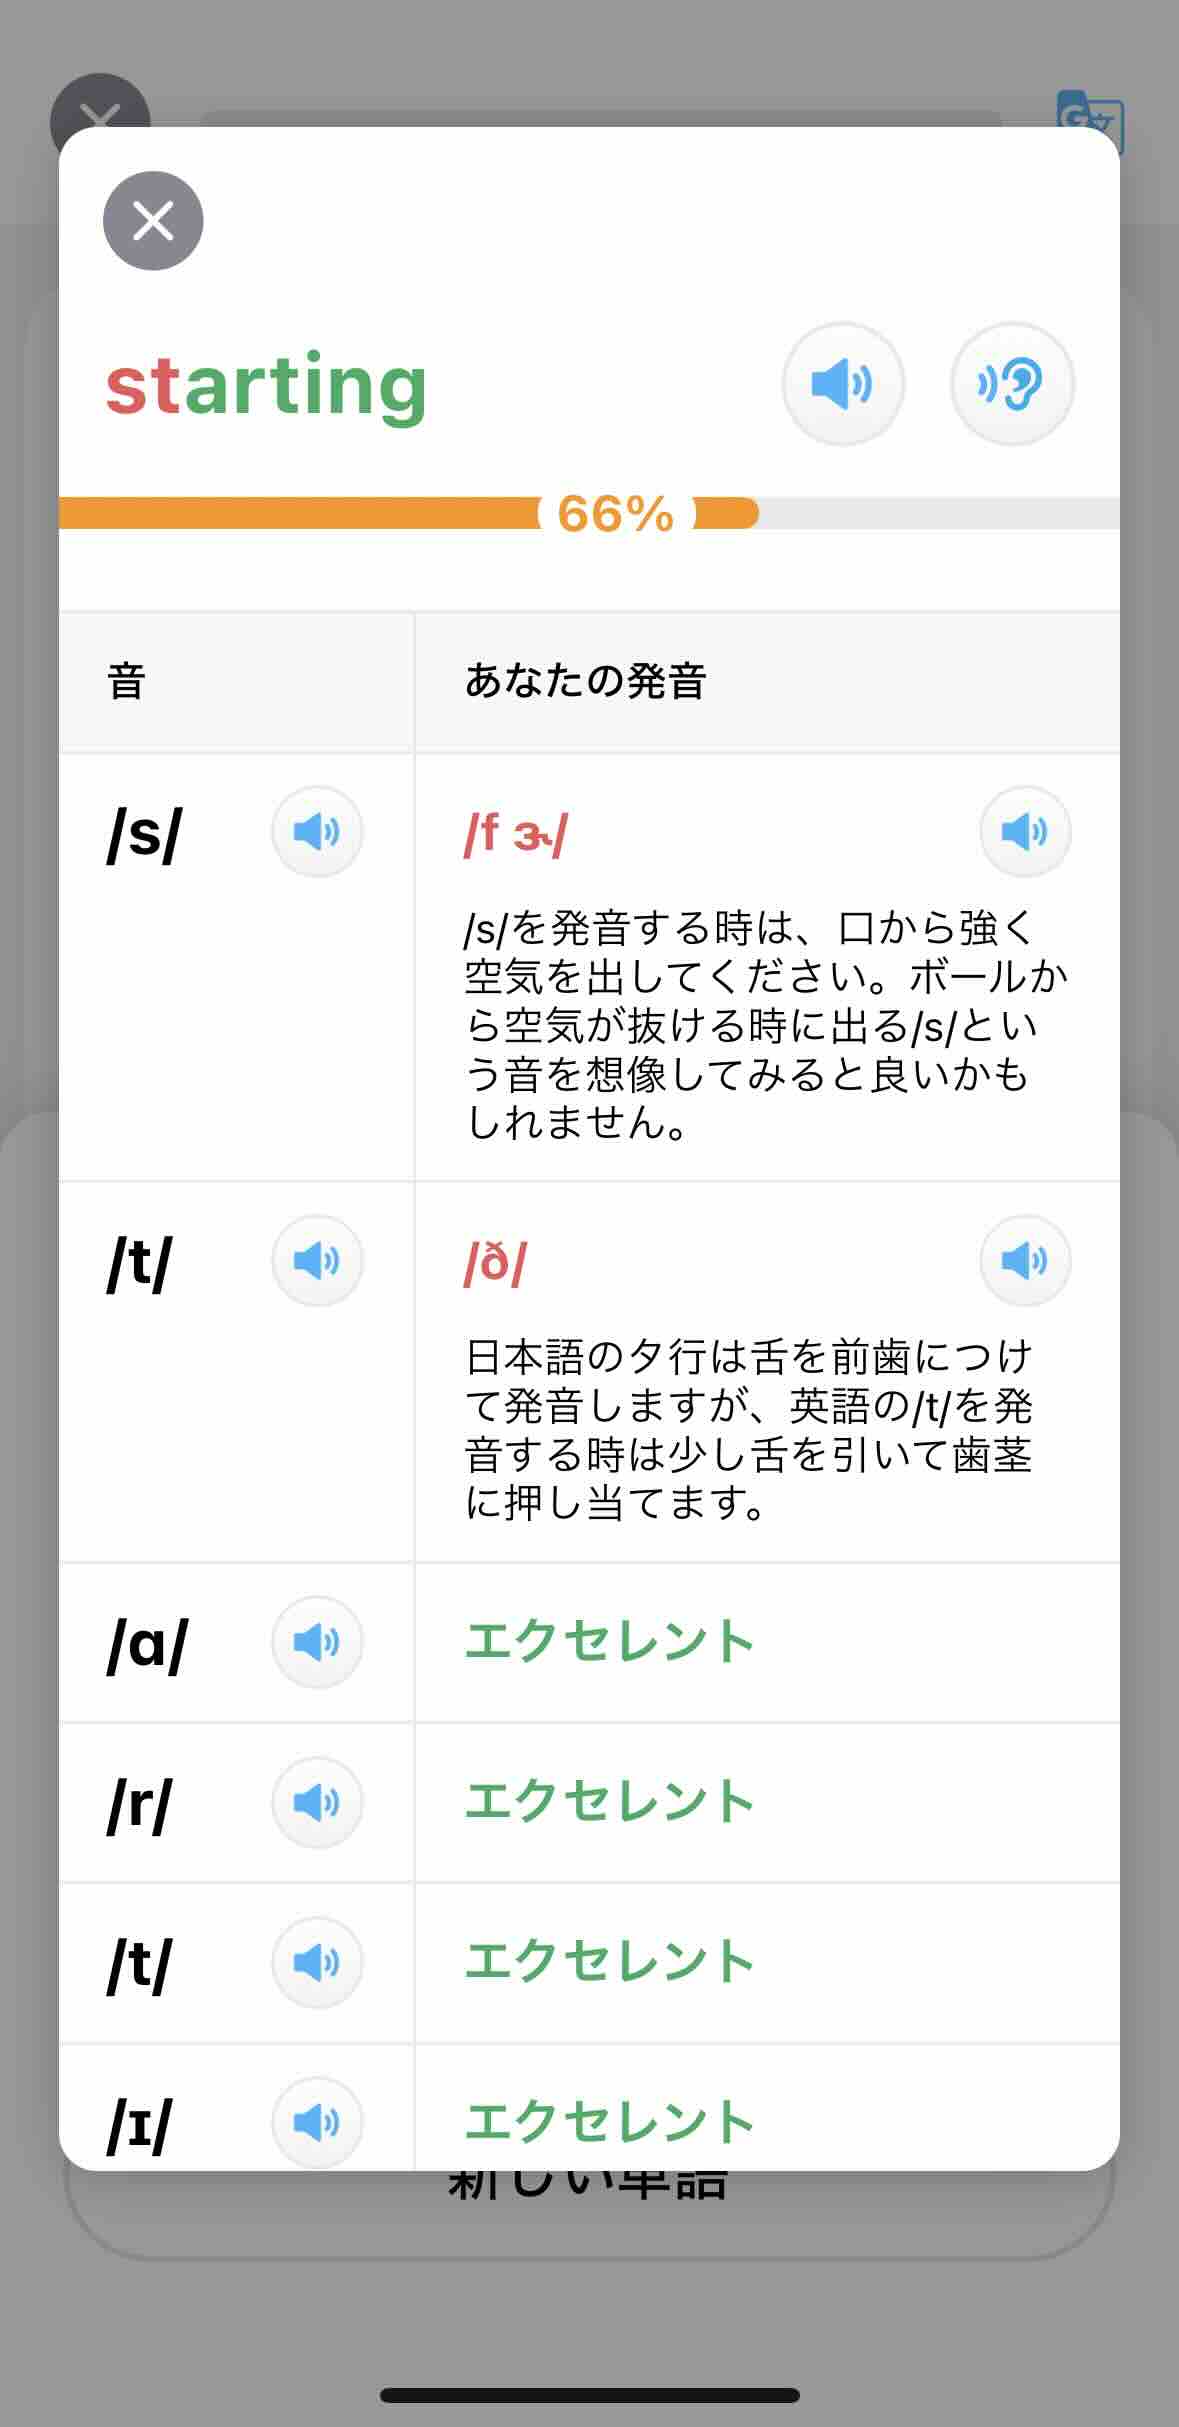 「スターティング」と日本語の発音で読んだ結果